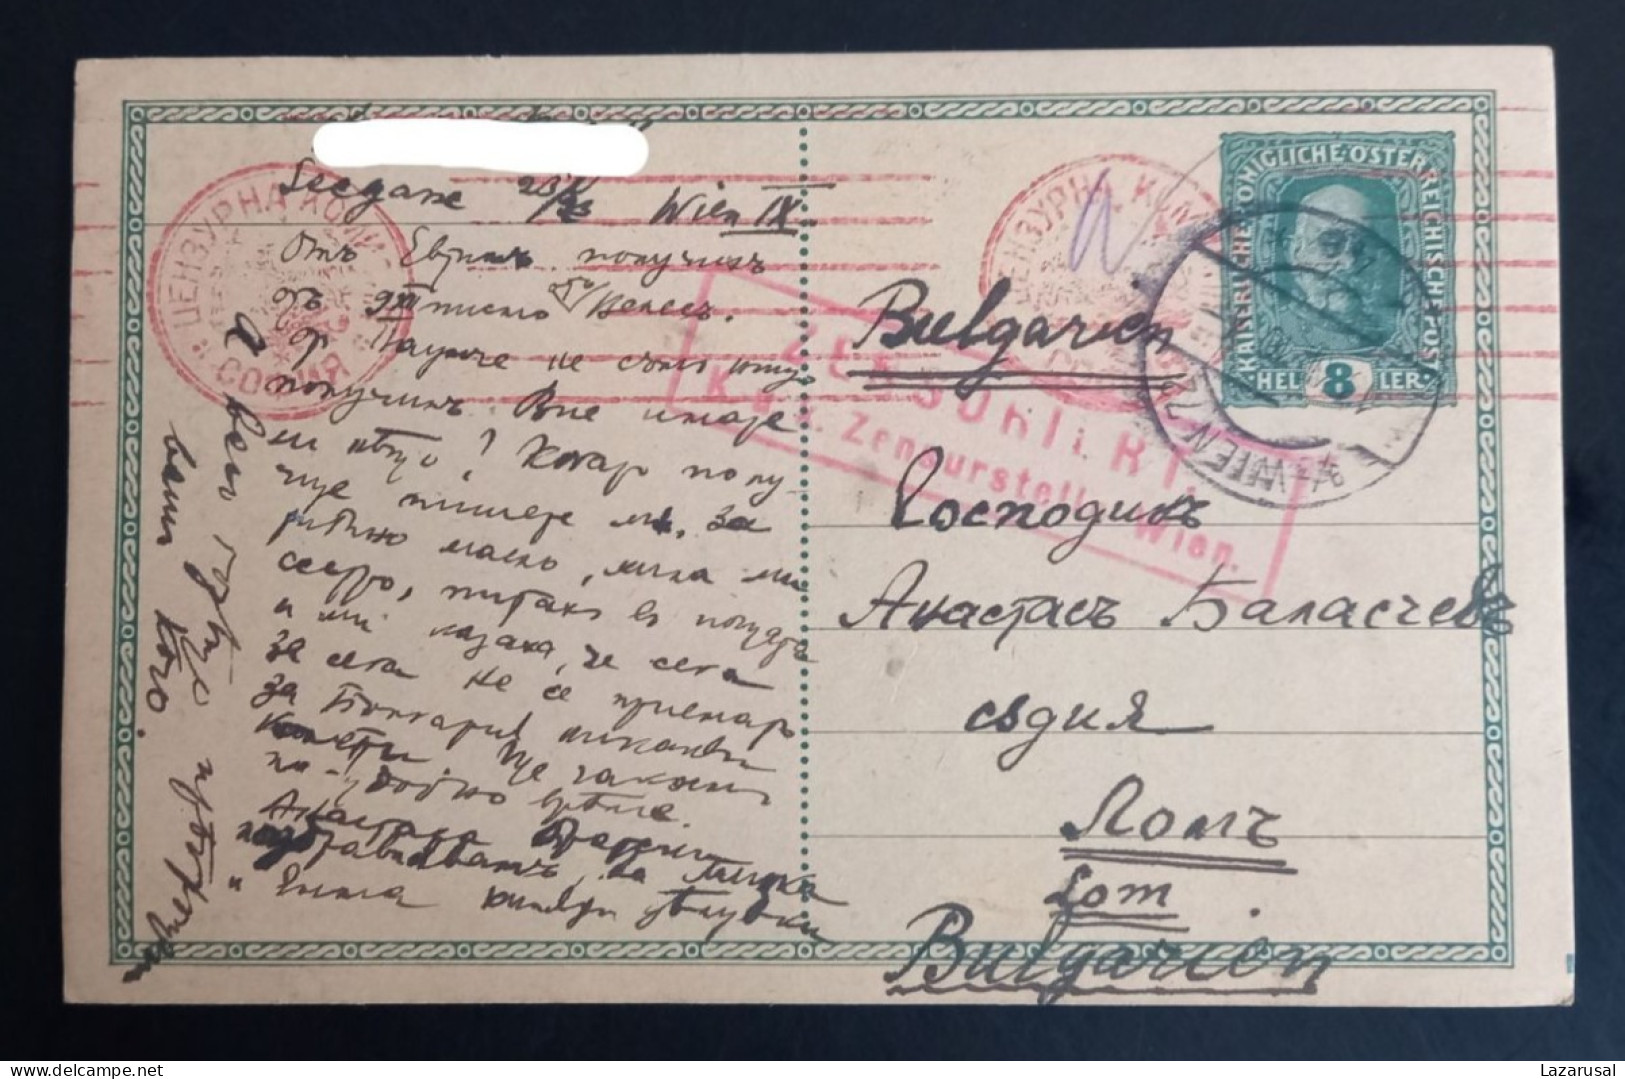 Lot #1  AUSTRIA WIEN WW I 1916 DOUBLE CENSORED Sofia Wien KUK Postal Stationery To Bulgaria - Cartoline